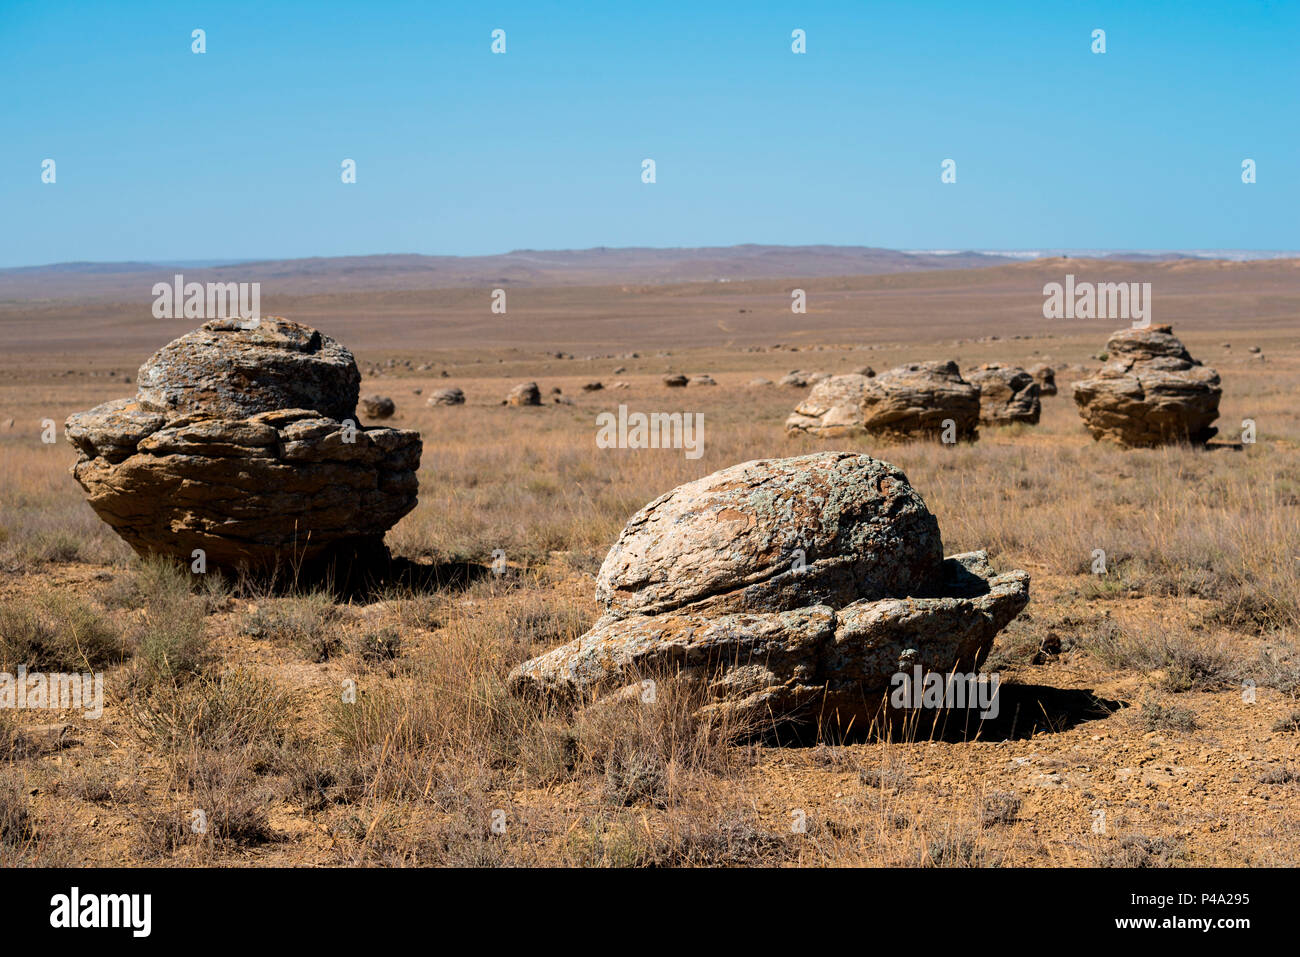 Commission géologique des formations de roche sphérique à la vallée de boules à la dépression de la mer Caspienne, de désert, d'Aktau, Kazakhstan région Mangystau Banque D'Images